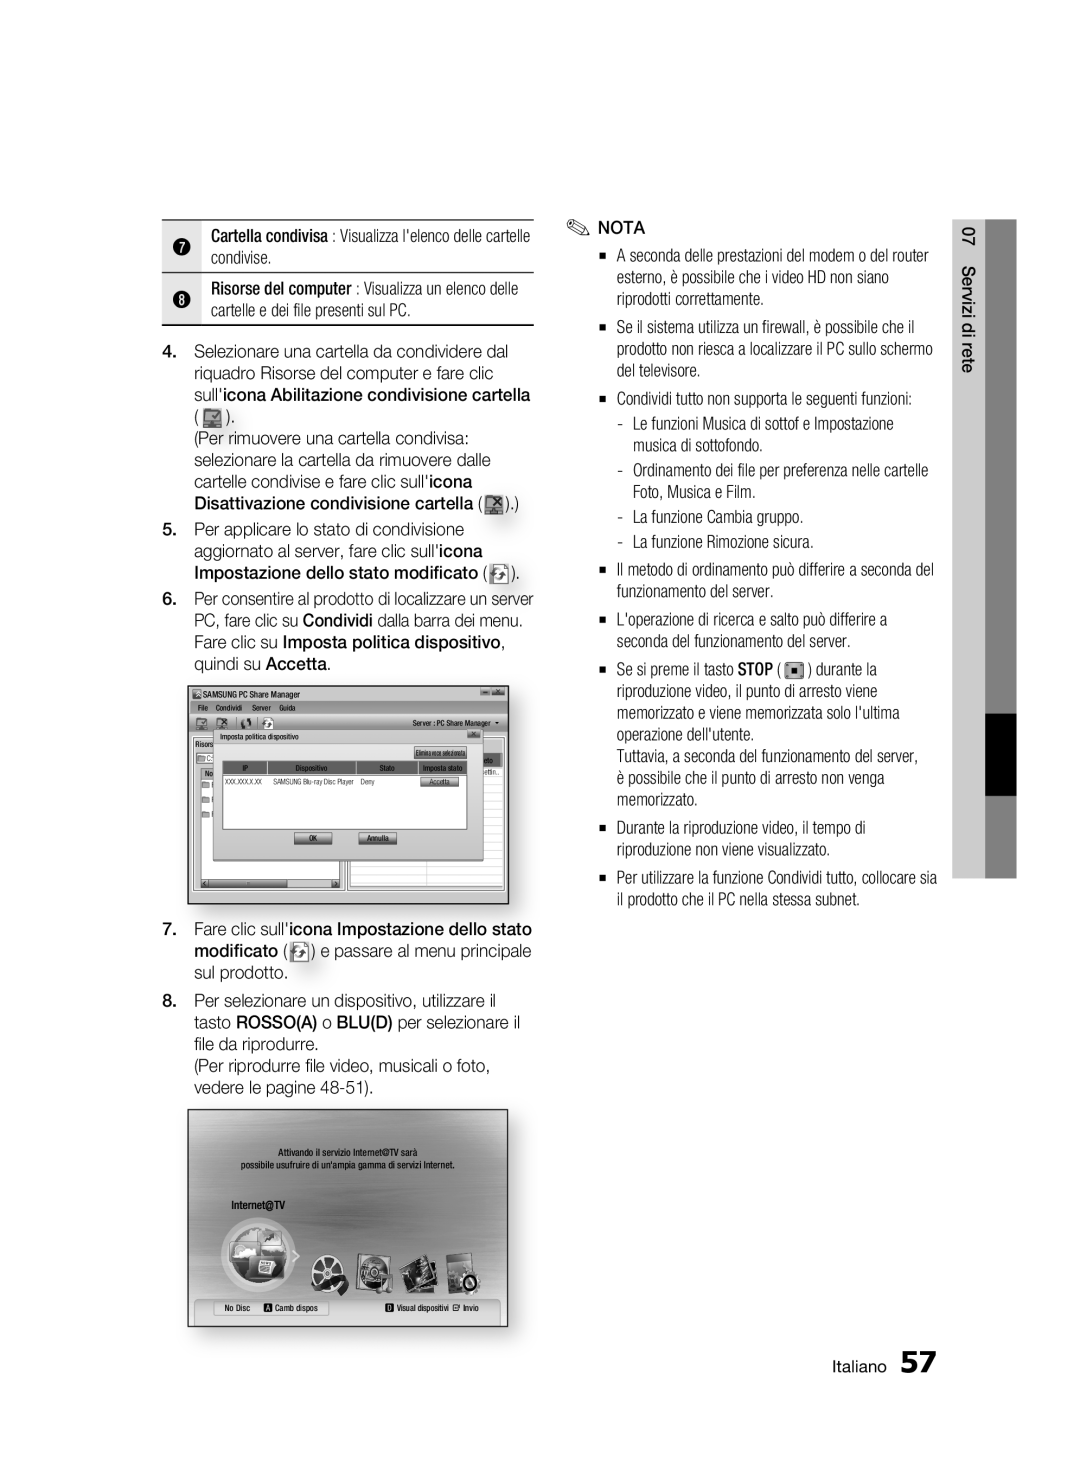 Samsung BD-C6500/XEF manual Risorse del computer Visualizza un elenco delle 